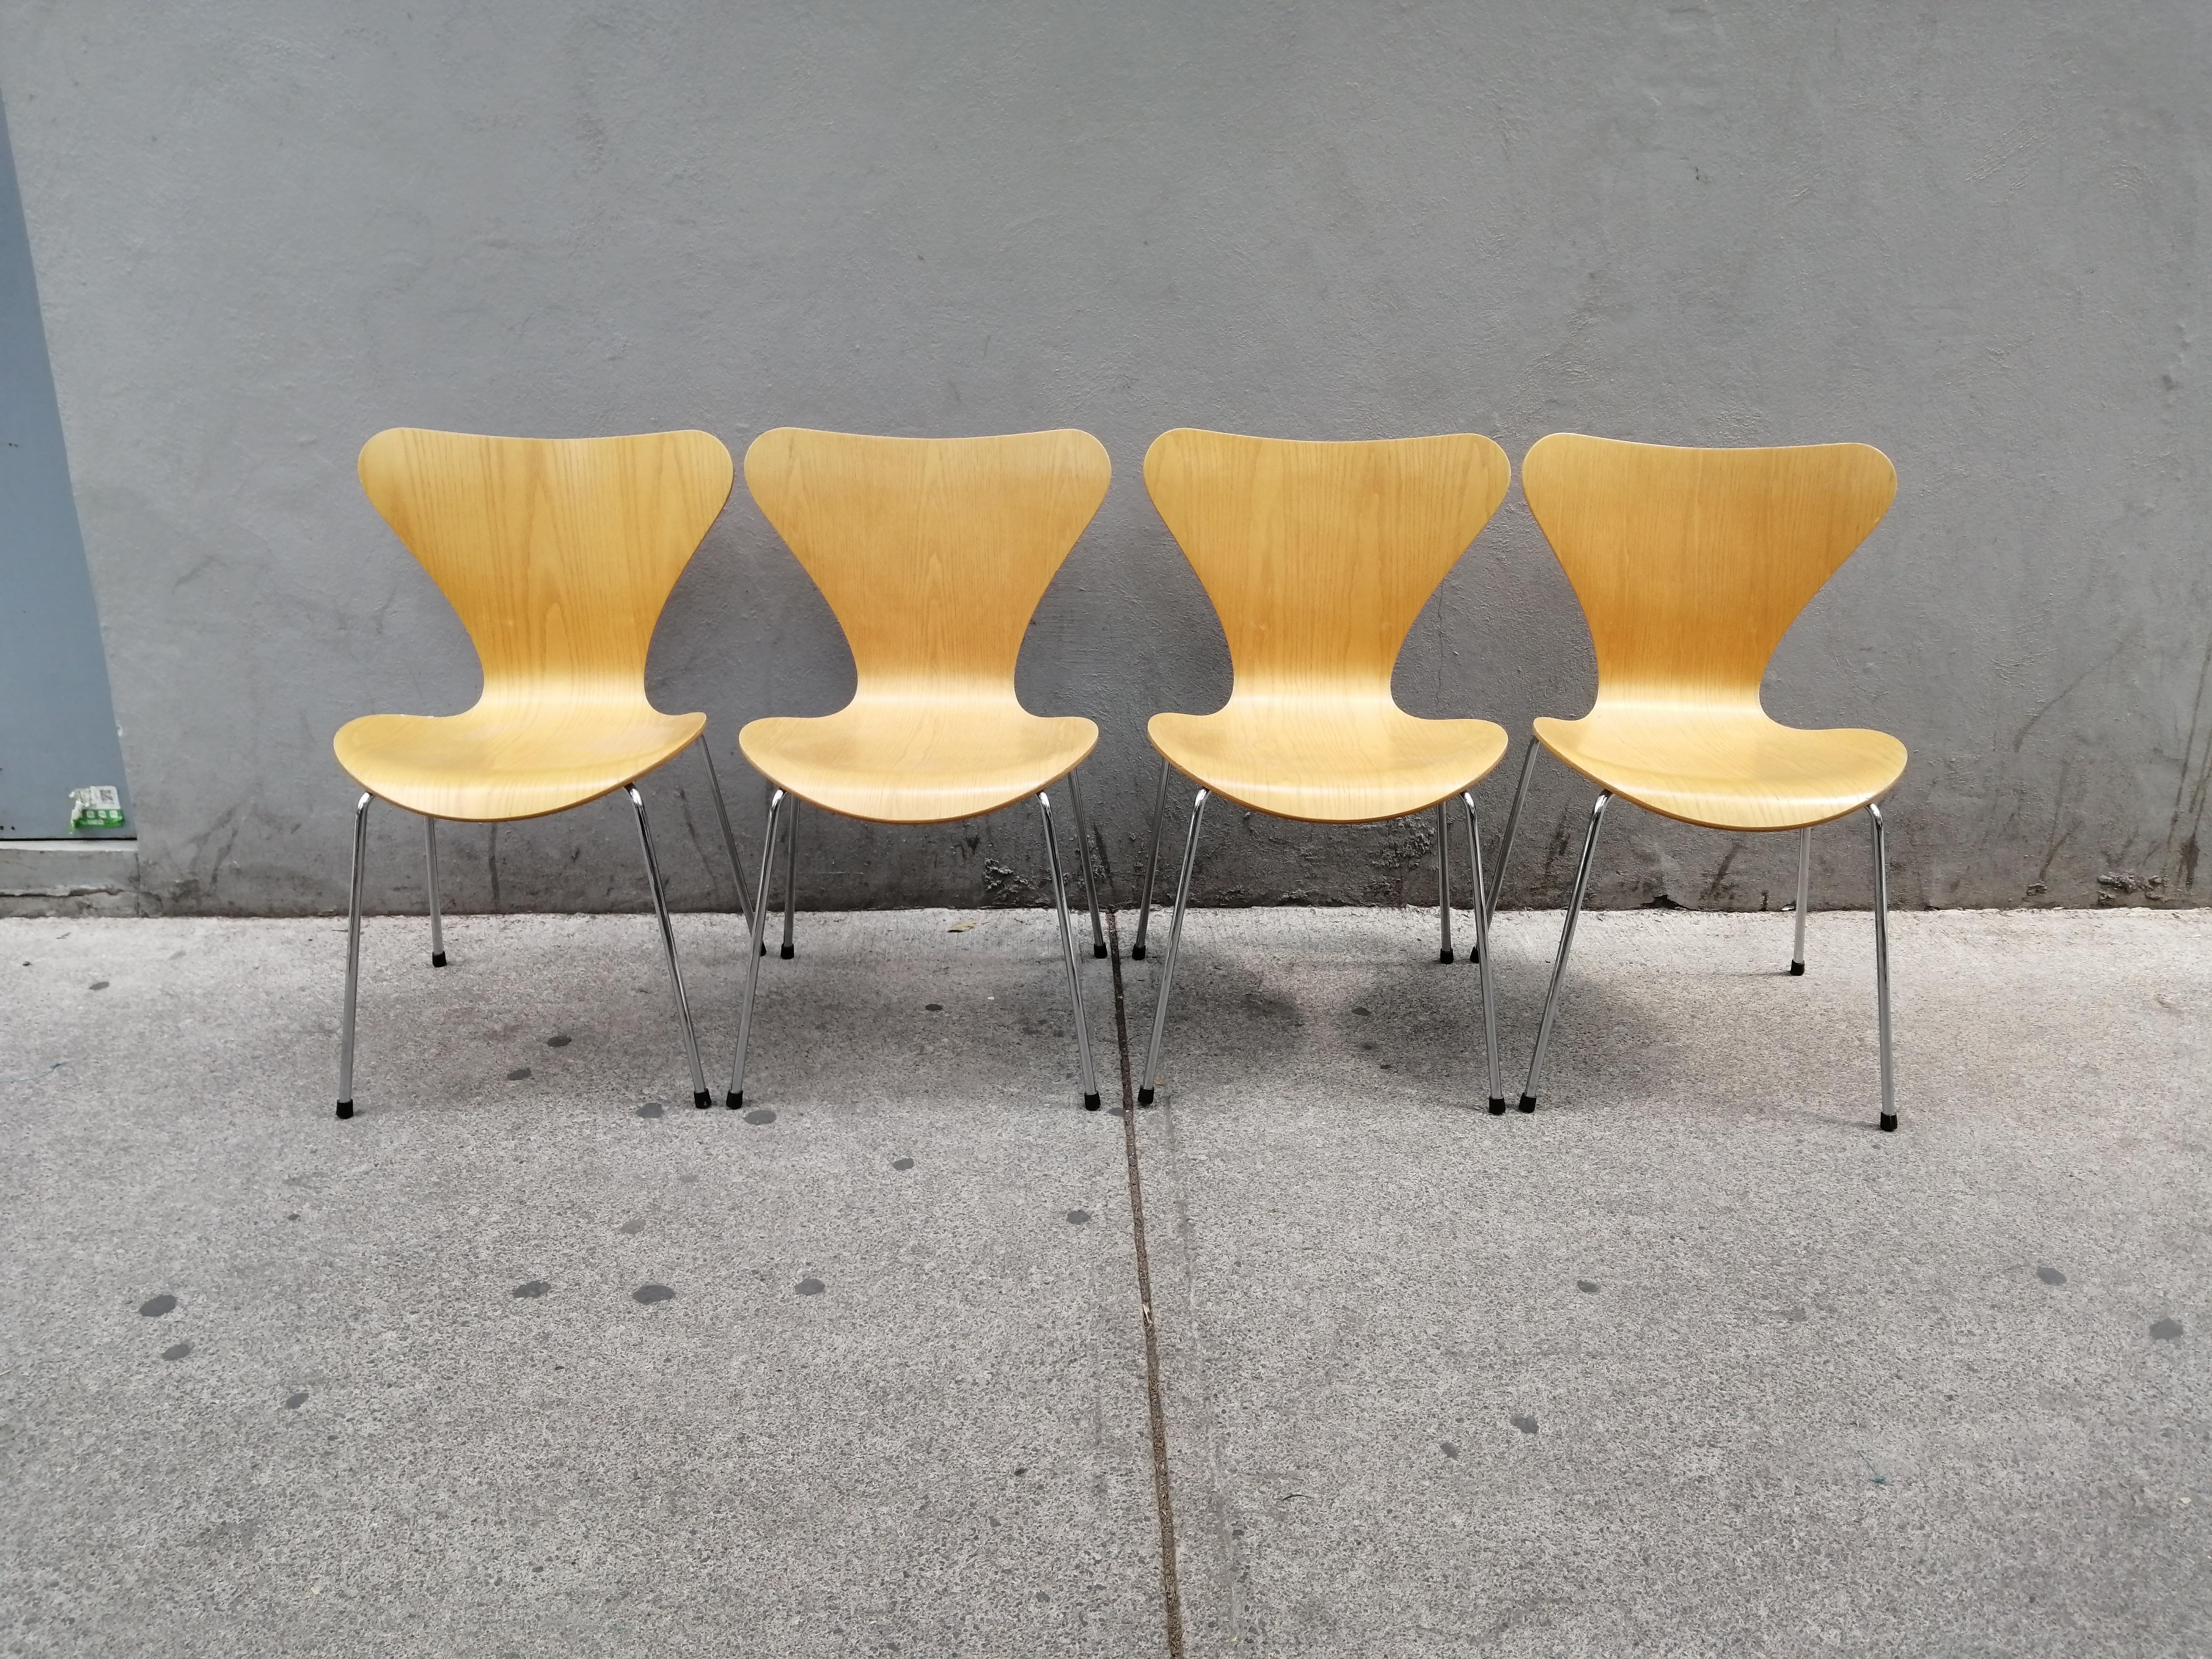 Ein Satz von 4 Stühlen aus Eschenholz und Stahl Modell 3107 (Nummer 7) von Arne Jacobsen. Diese Stühle wurden 1999 von Fritz Hansen hergestellt und von Knoll Studio vertrieben. Die Holzstrukturen des Stuhls zeigen schöne Furniermaserungen.

Wir